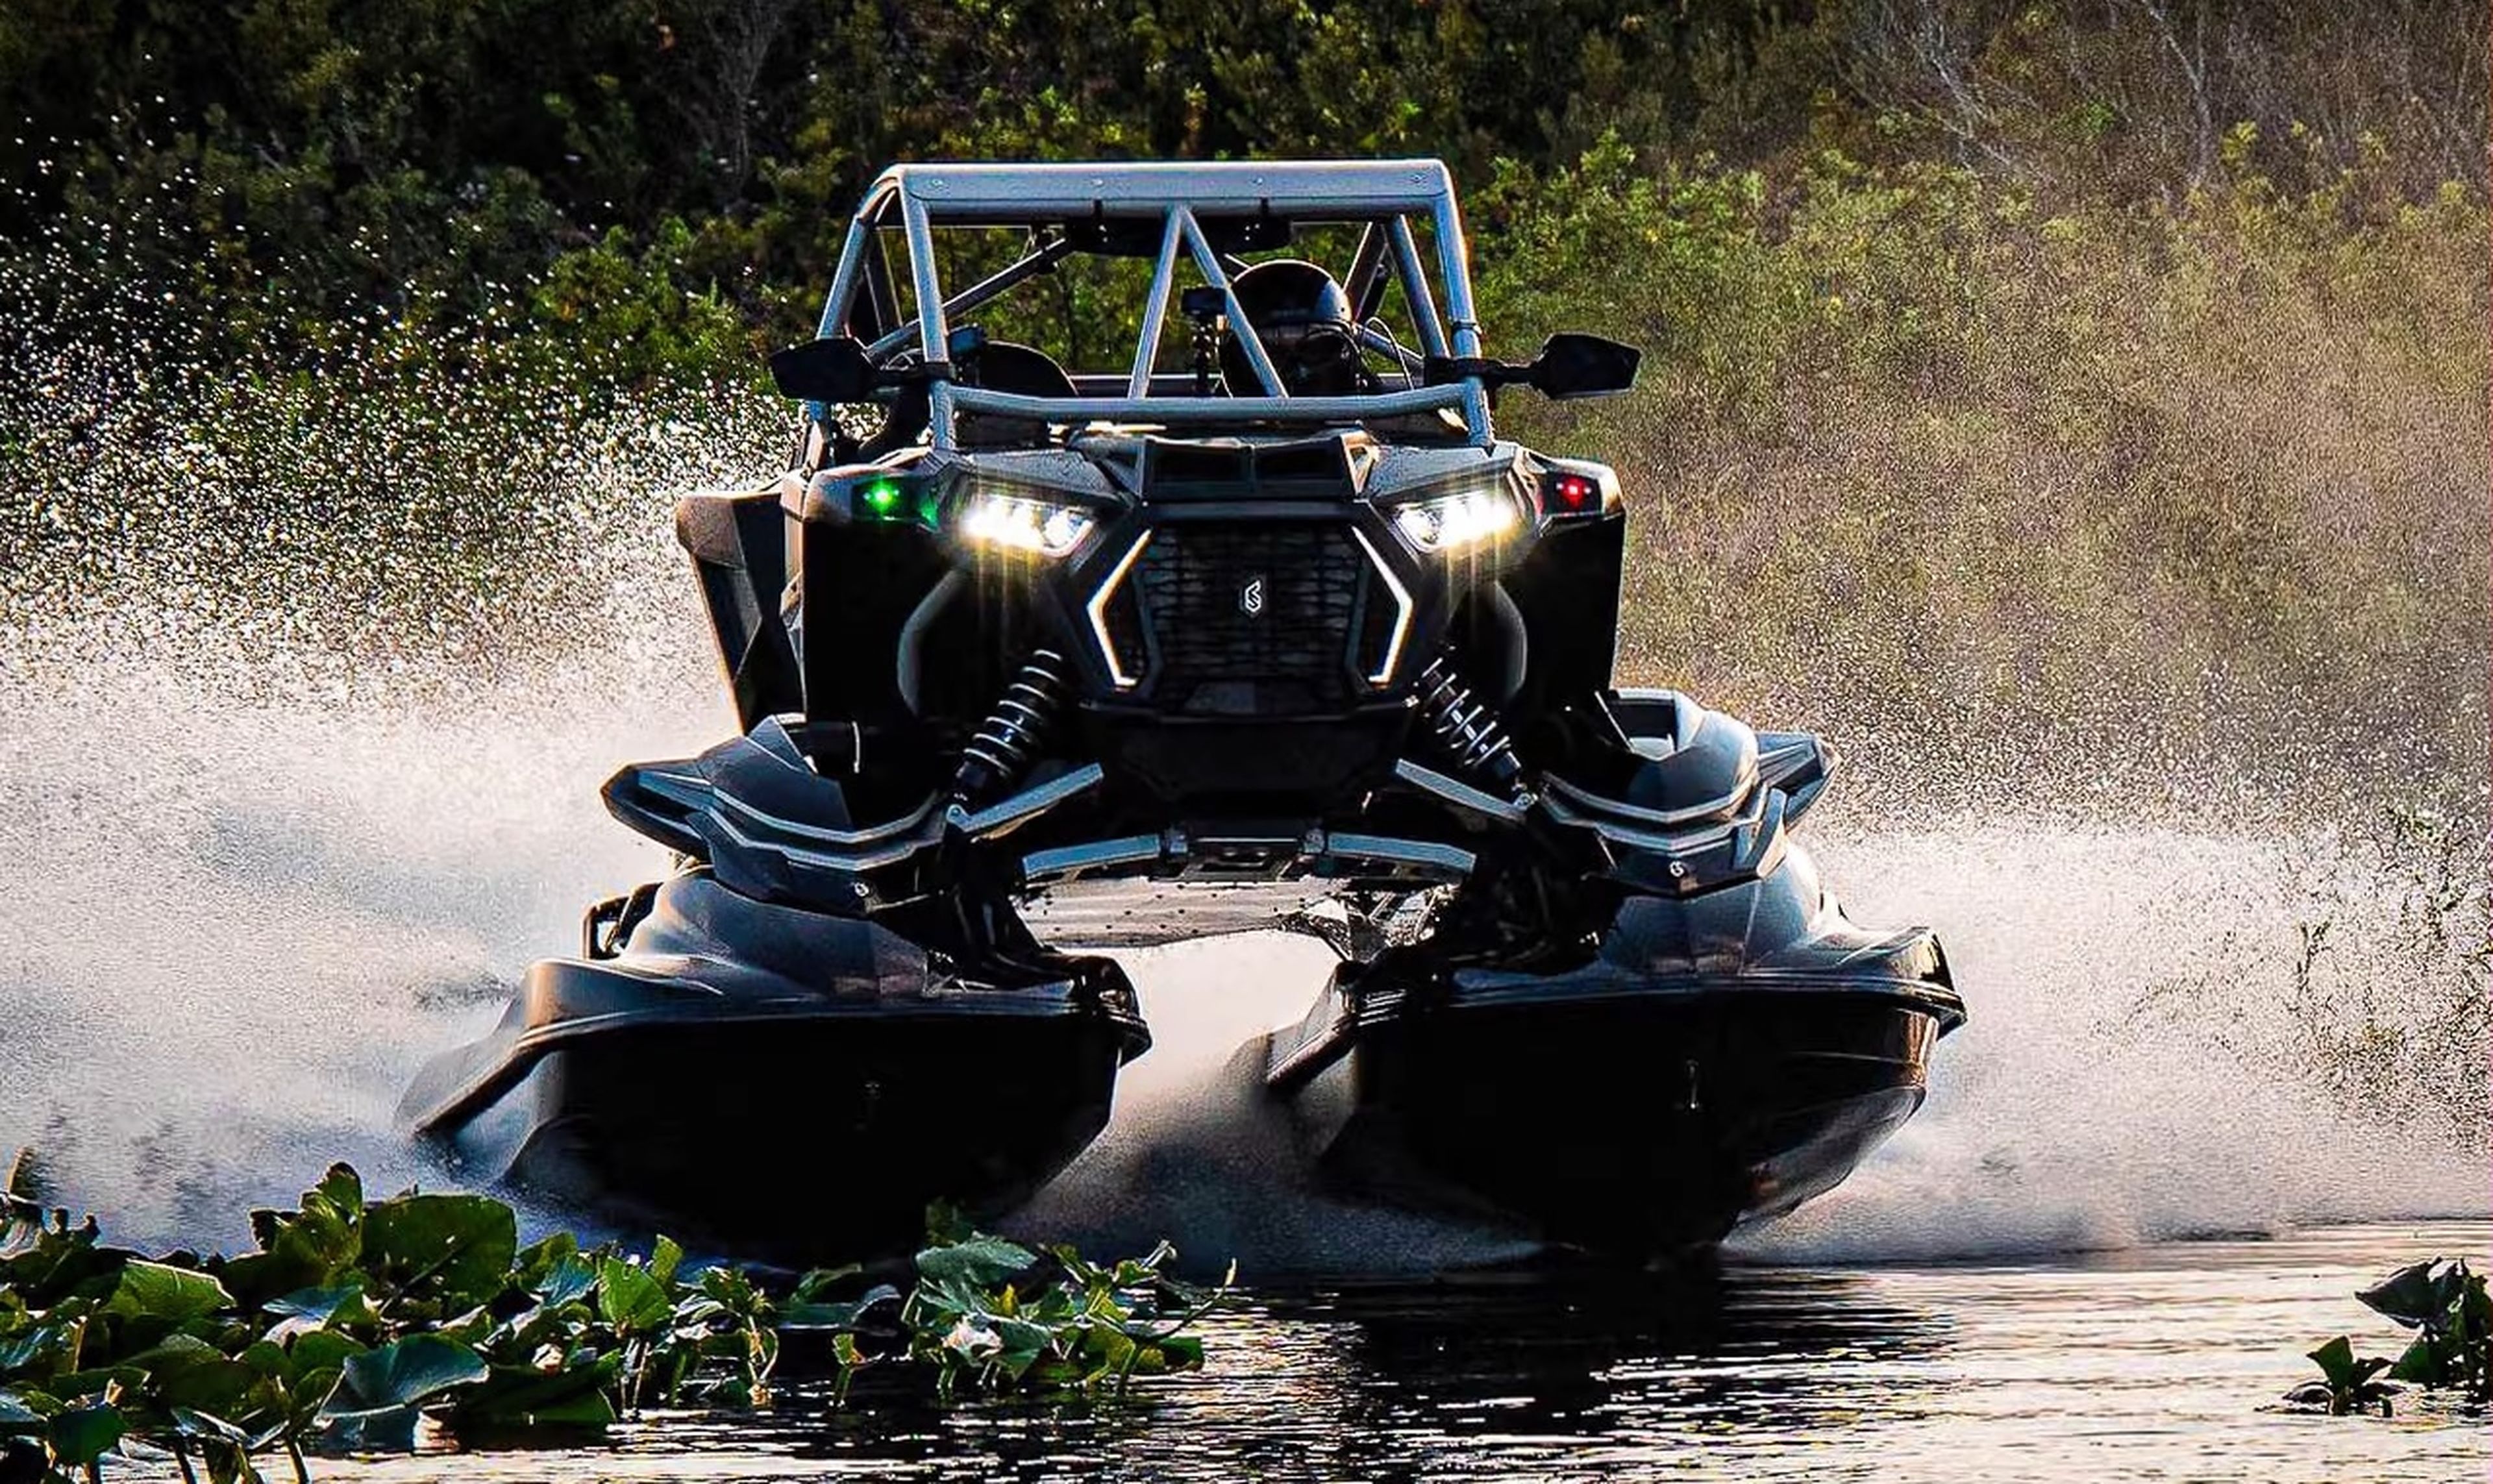 Shadow Six AUV, el UTV con motos acuáticas en vez de ruedas (vídeo)